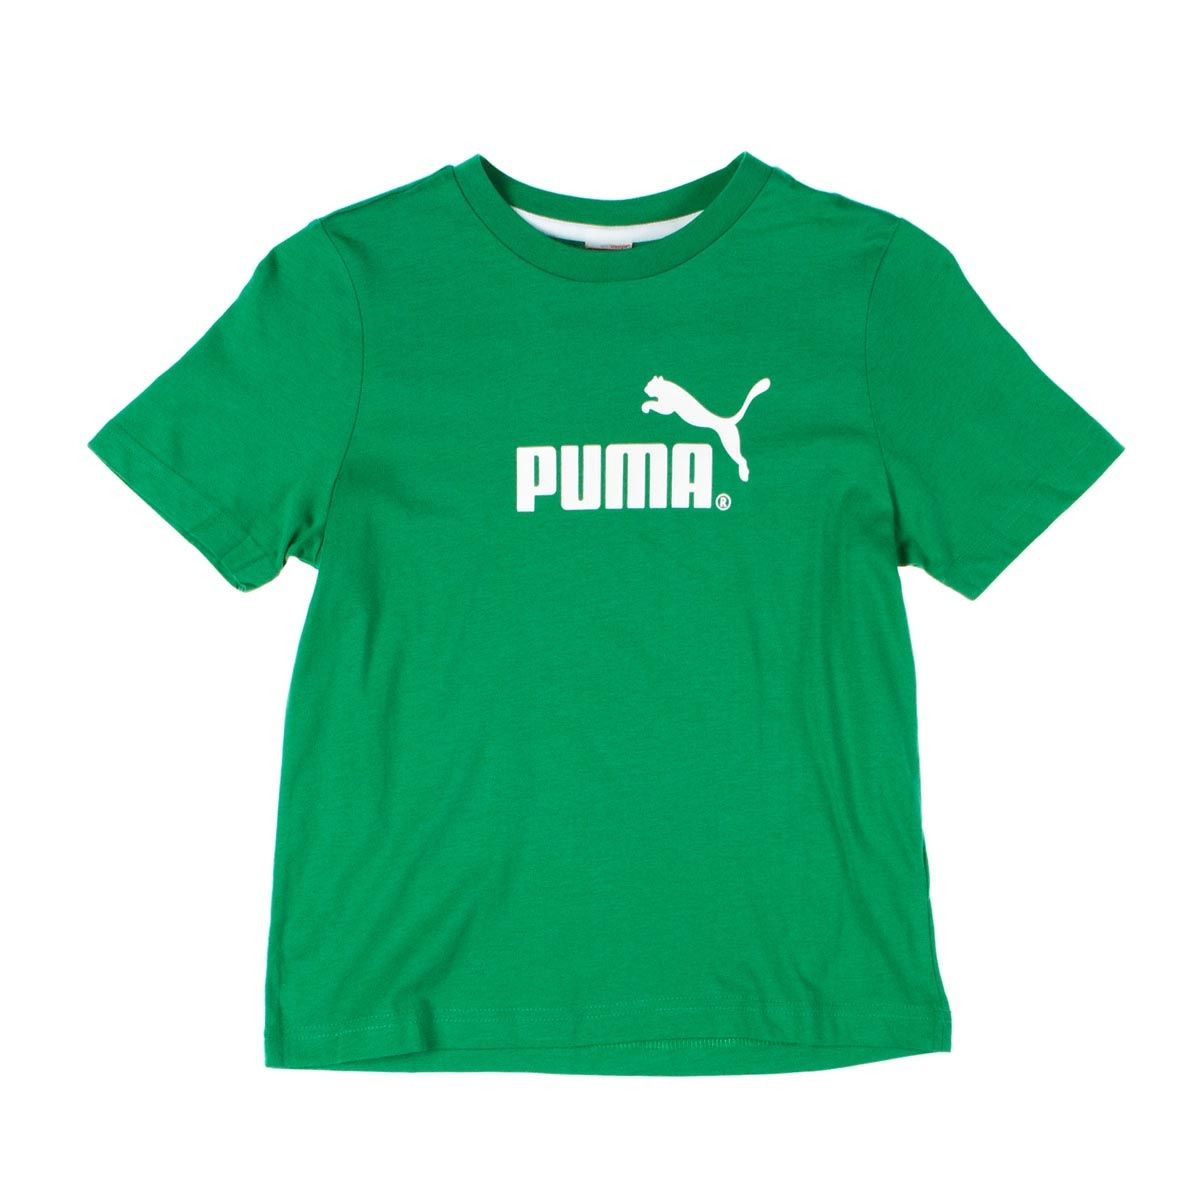 AmazingStuf: Puma T-shirt